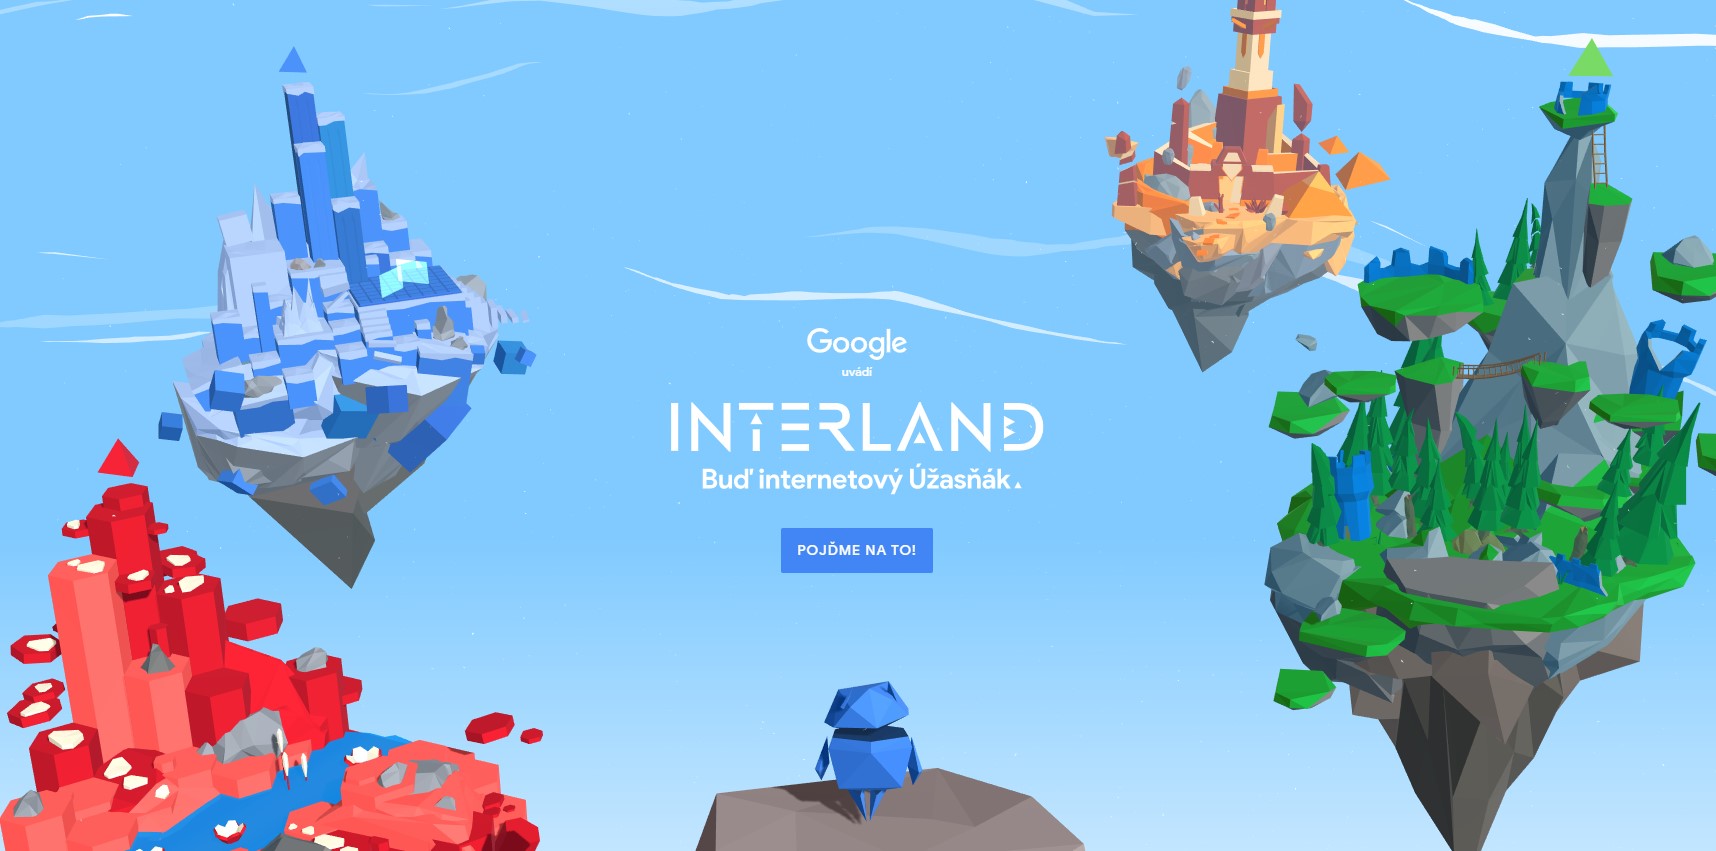 Google představil hru Interland, učí děti bezpečně používat internet